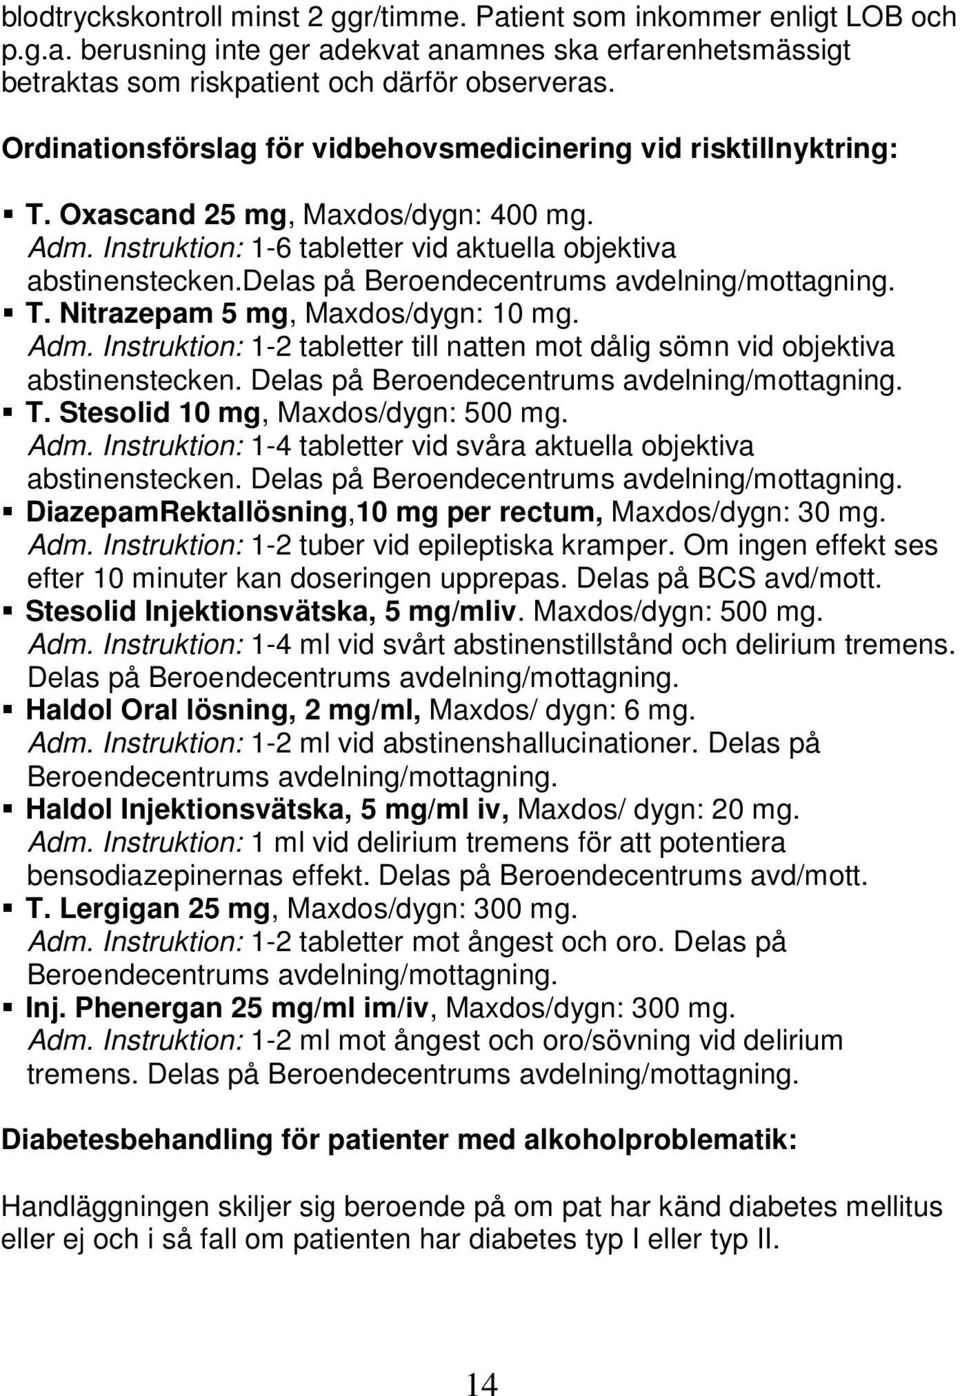 delas på Beroendecentrums avdelning/mottagning. T. Nitrazepam 5 mg, Maxdos/dygn: 10 mg. Adm. Instruktion: 1-2 tabletter till natten mot dålig sömn vid objektiva abstinenstecken.